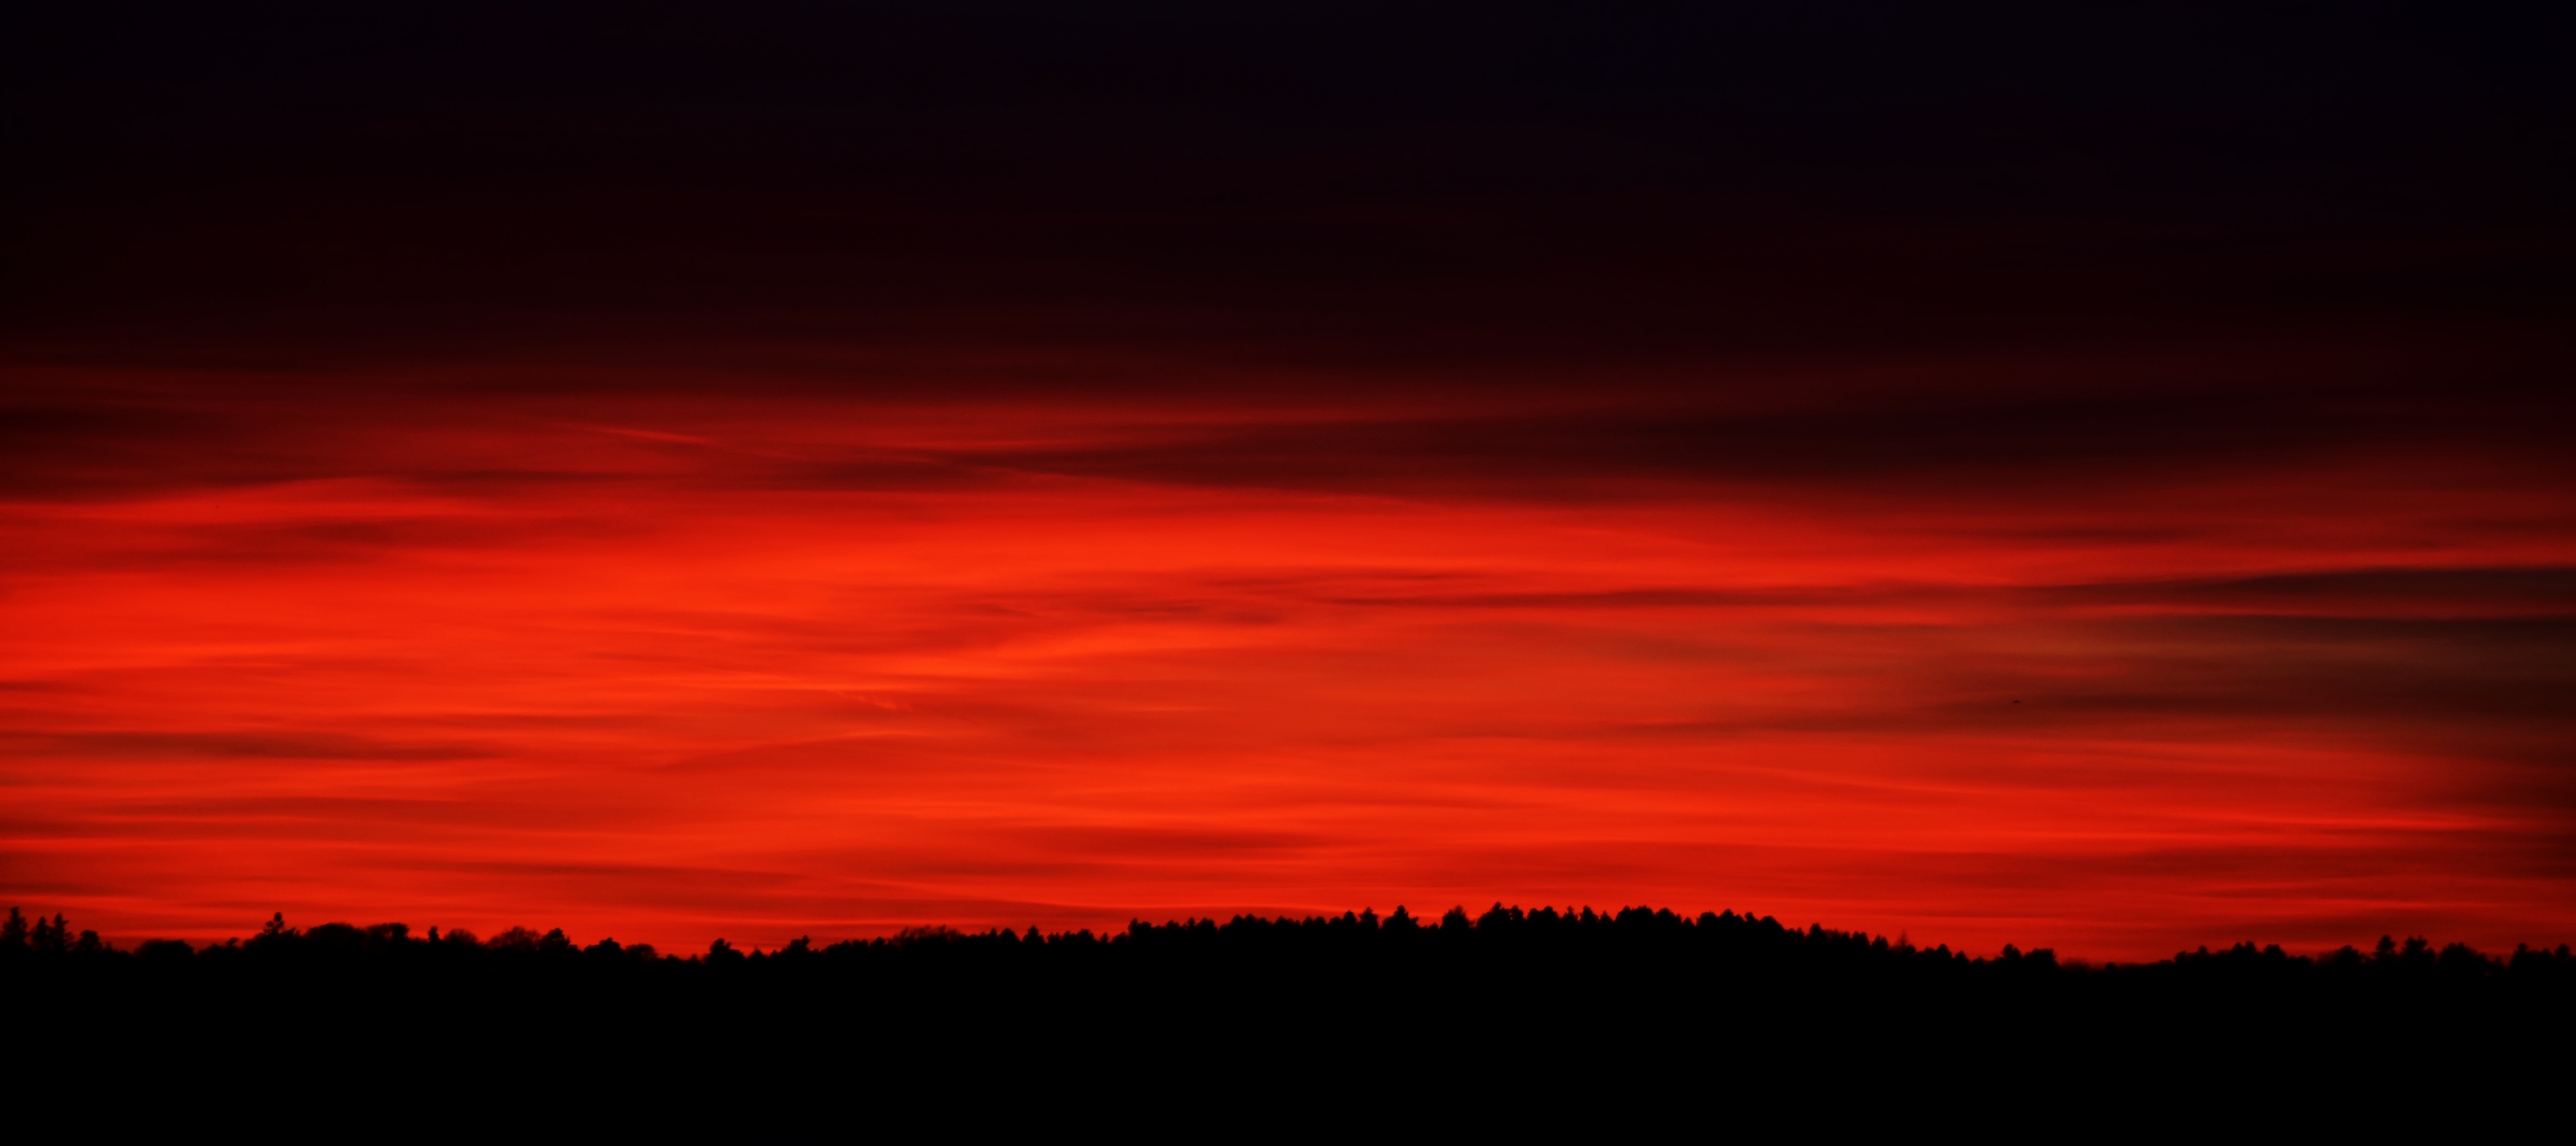 Бесплатное фото Красный заката солнца